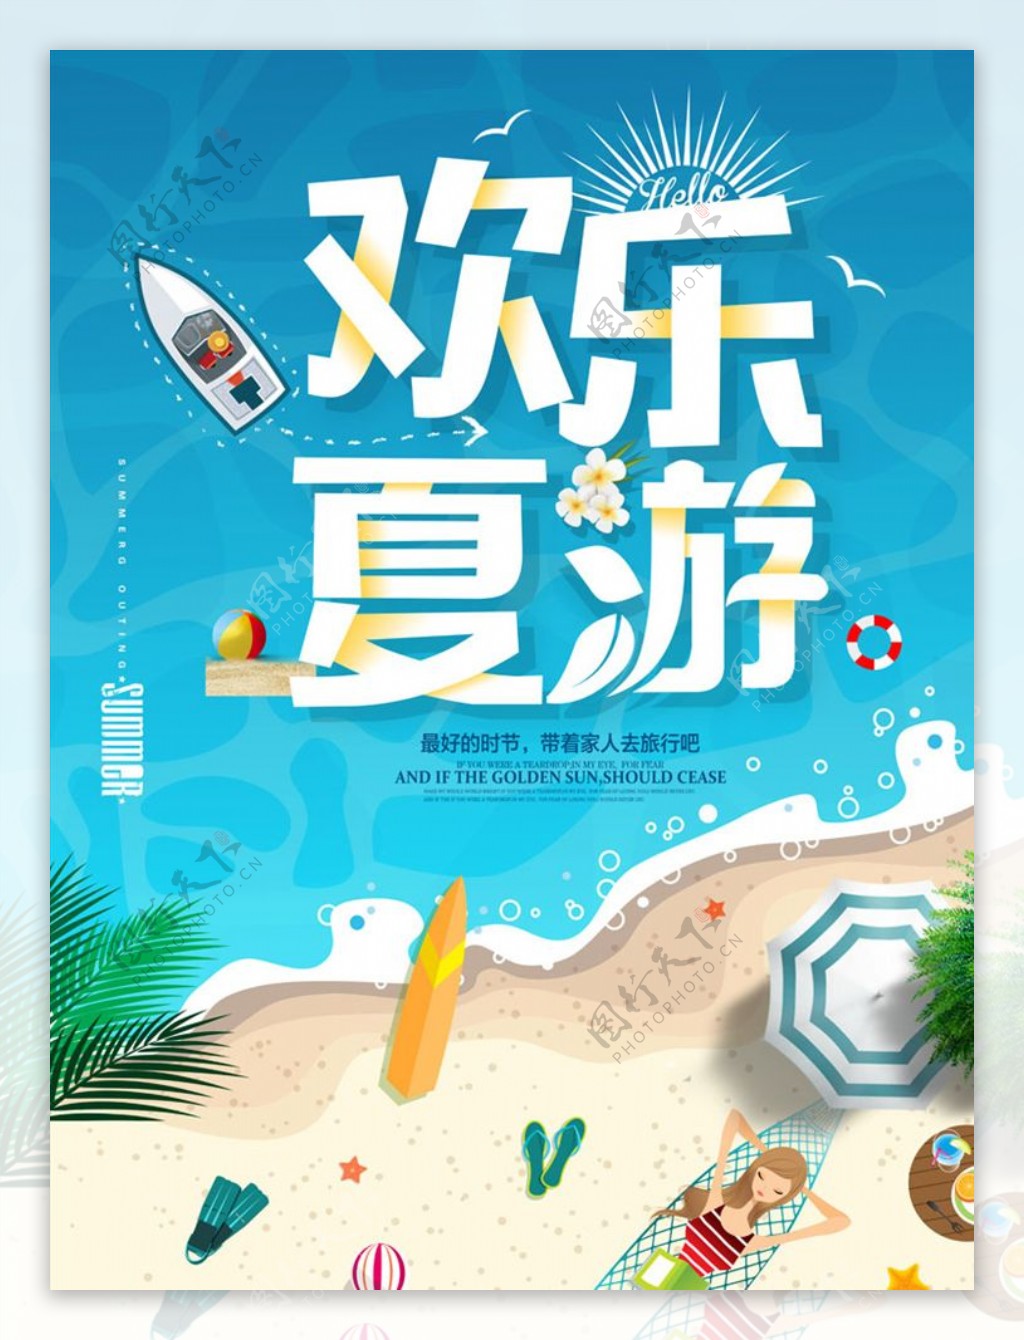 夏季出游狂欢旅游促销海报